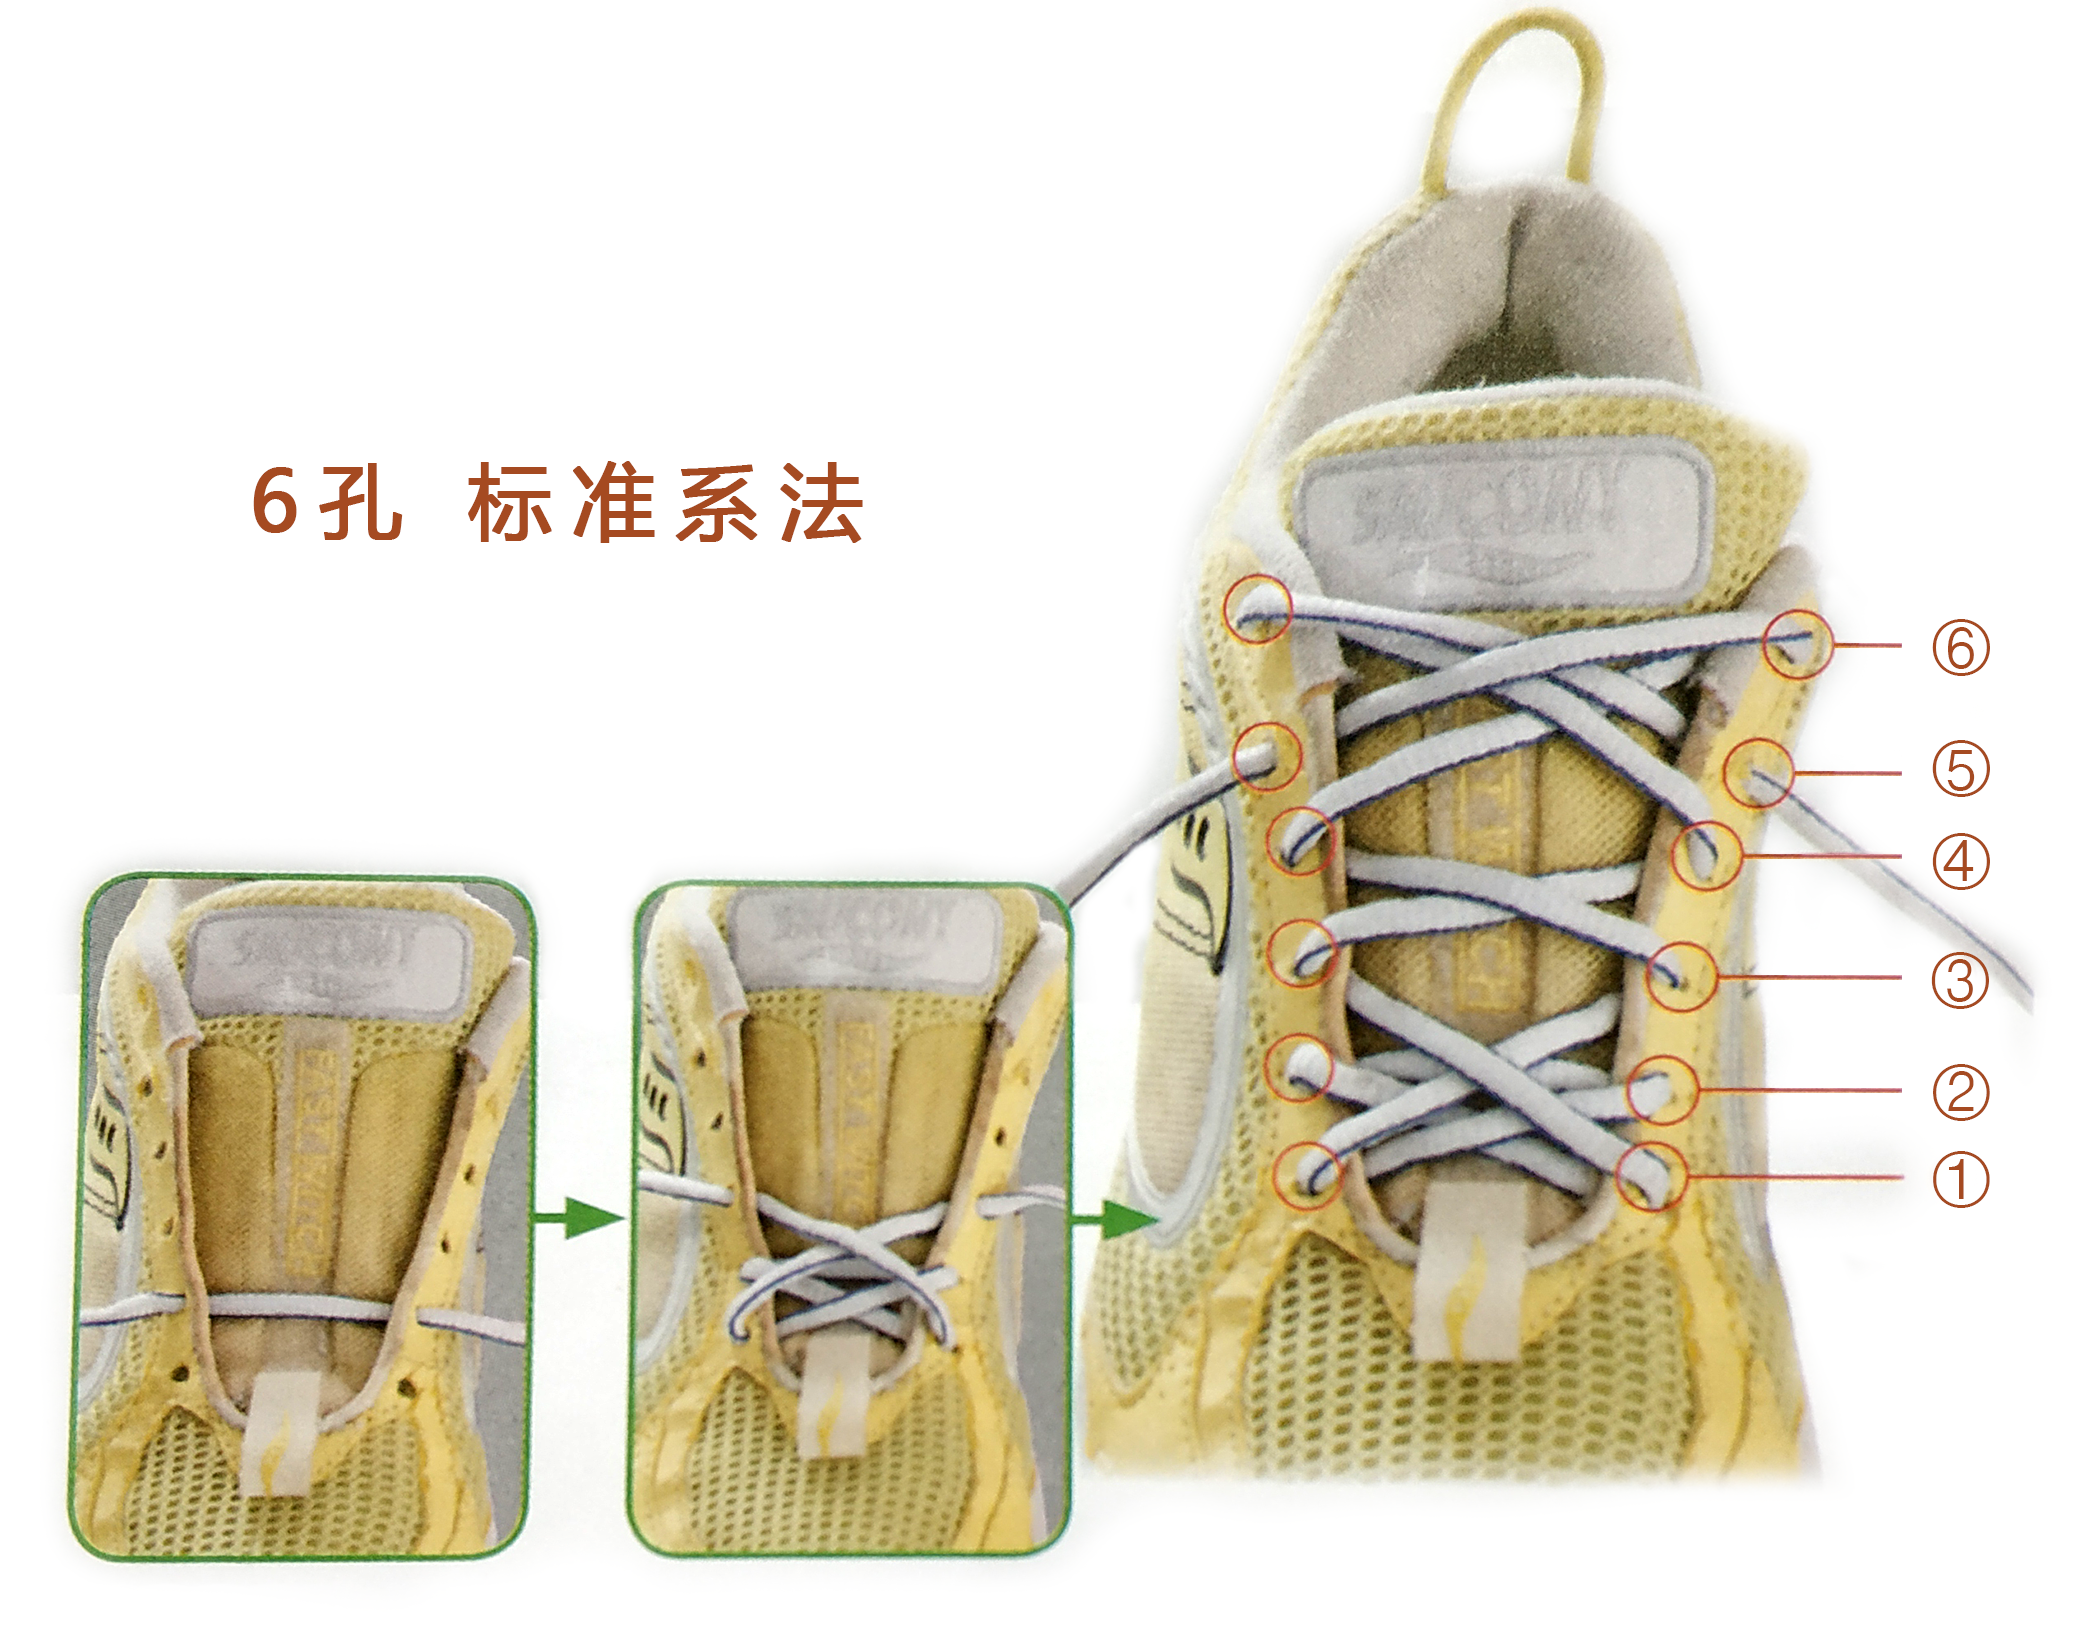 鞋带弹簧系法图片